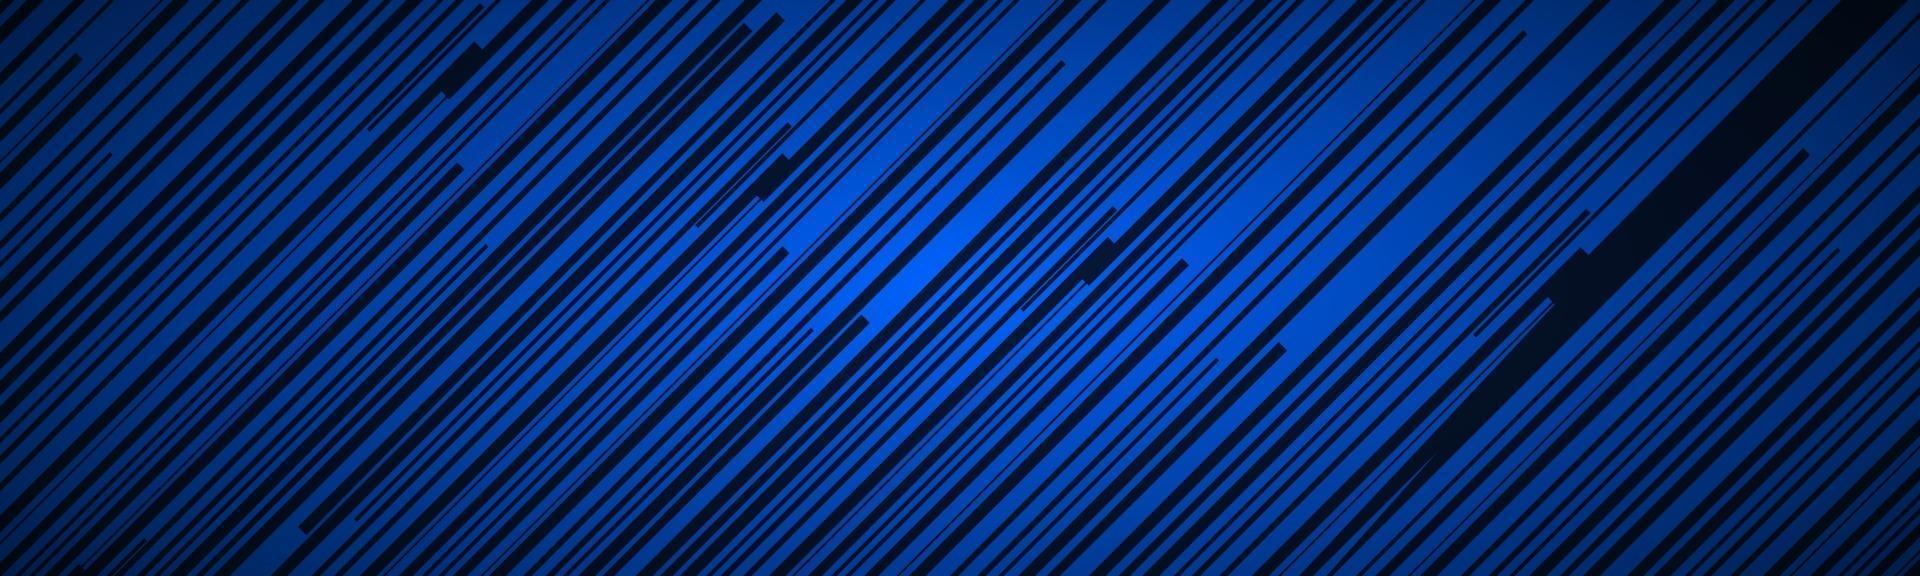 dunkle abstrakte Kopfzeile mit blauen und schwarzen schrägen Linien gestreiftes Muster parallele Linien und Streifen Banner diagonale Faservektorillustration vektor